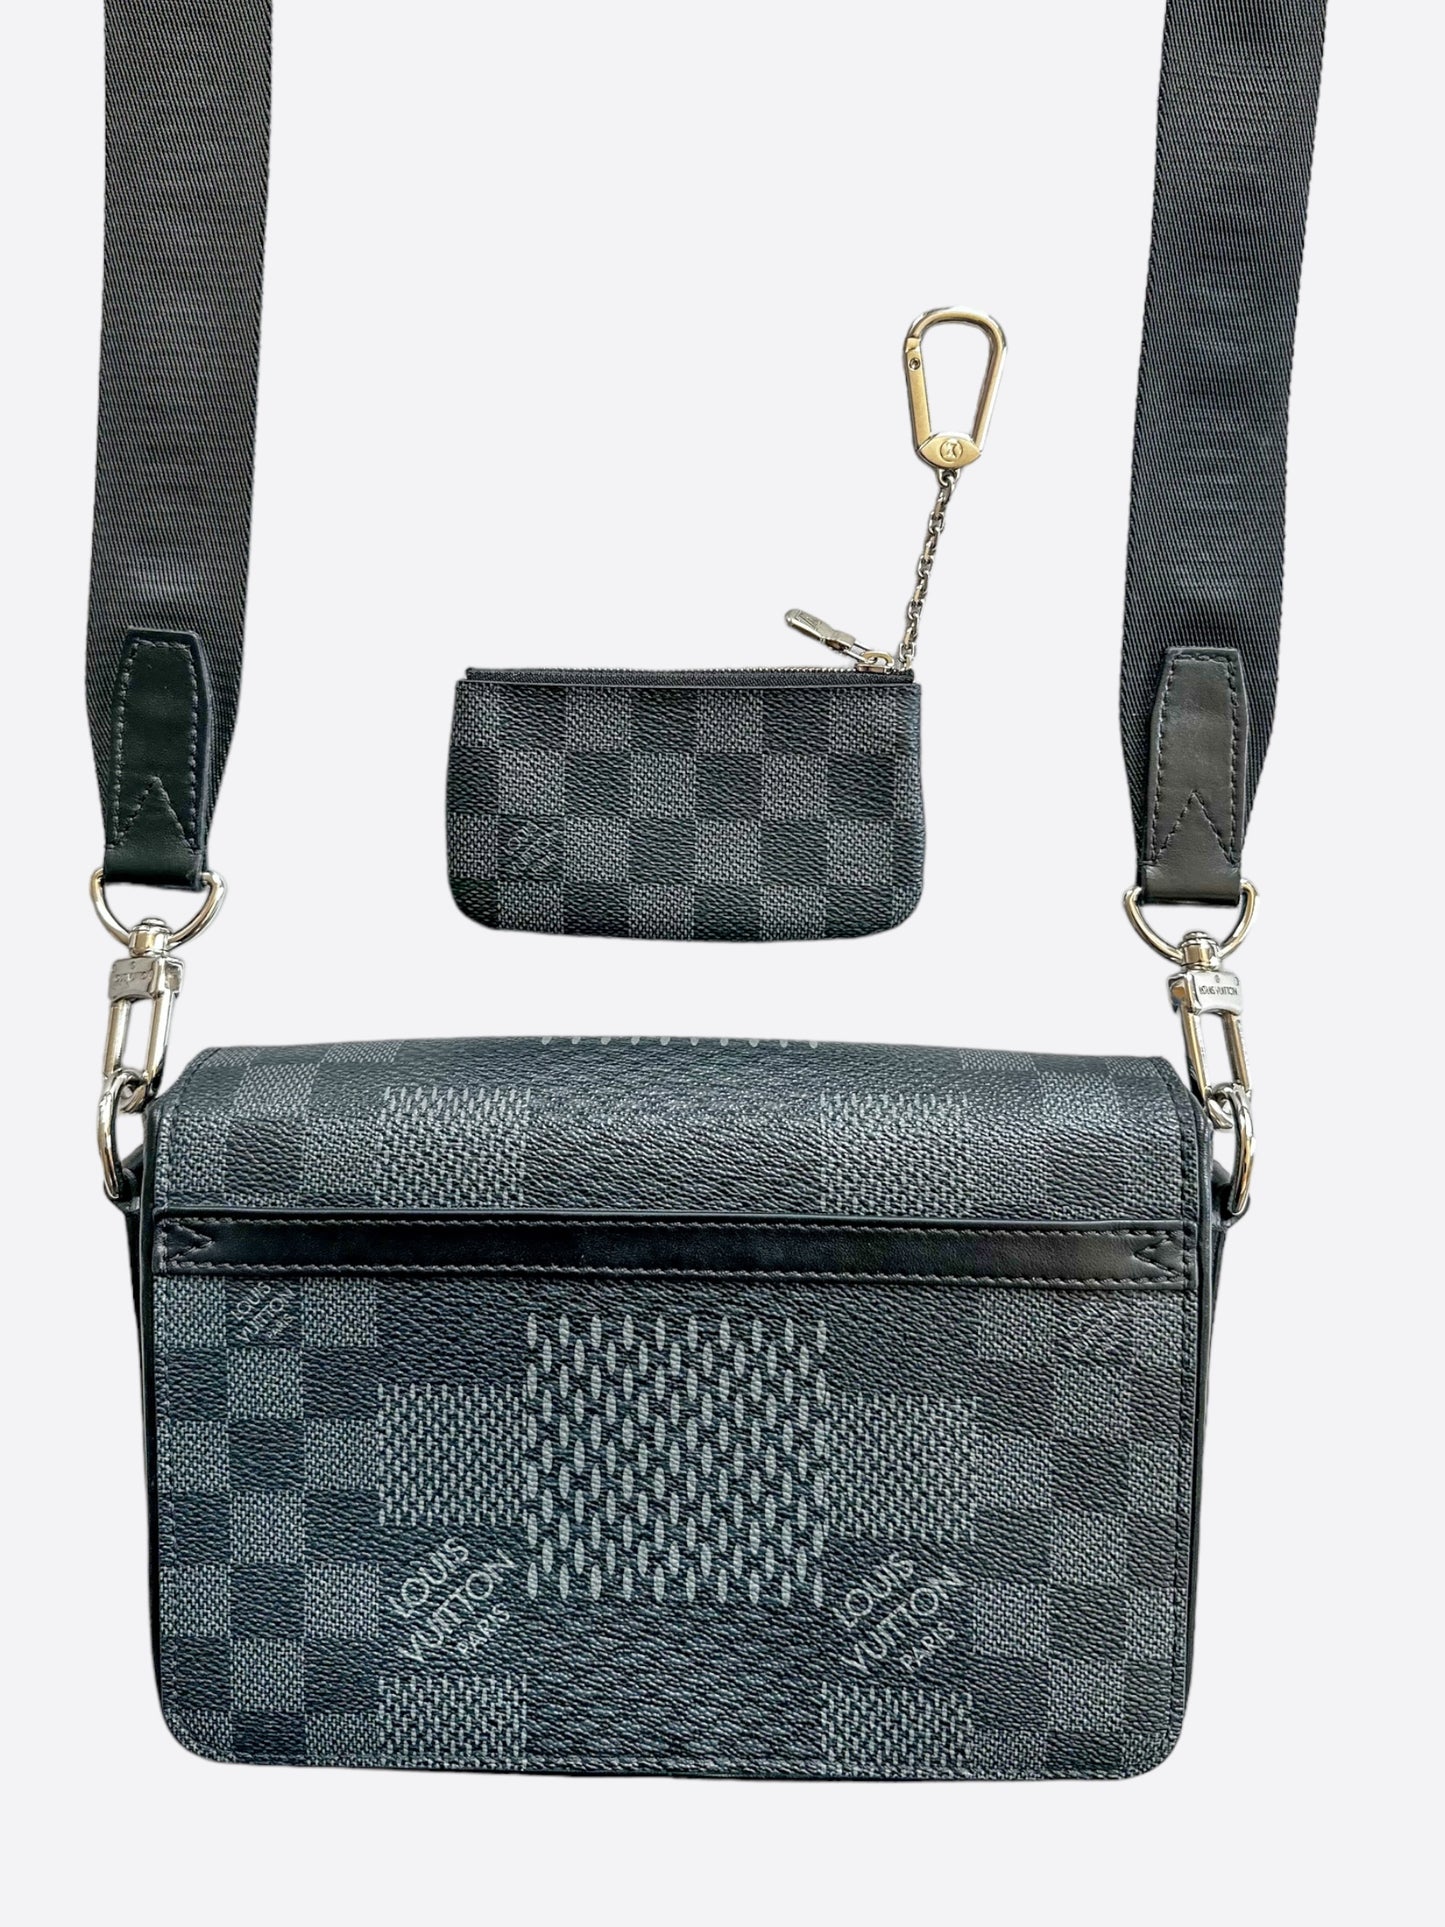 Louis Vuitton Damier Graphite 3D Studio Messenger Bag